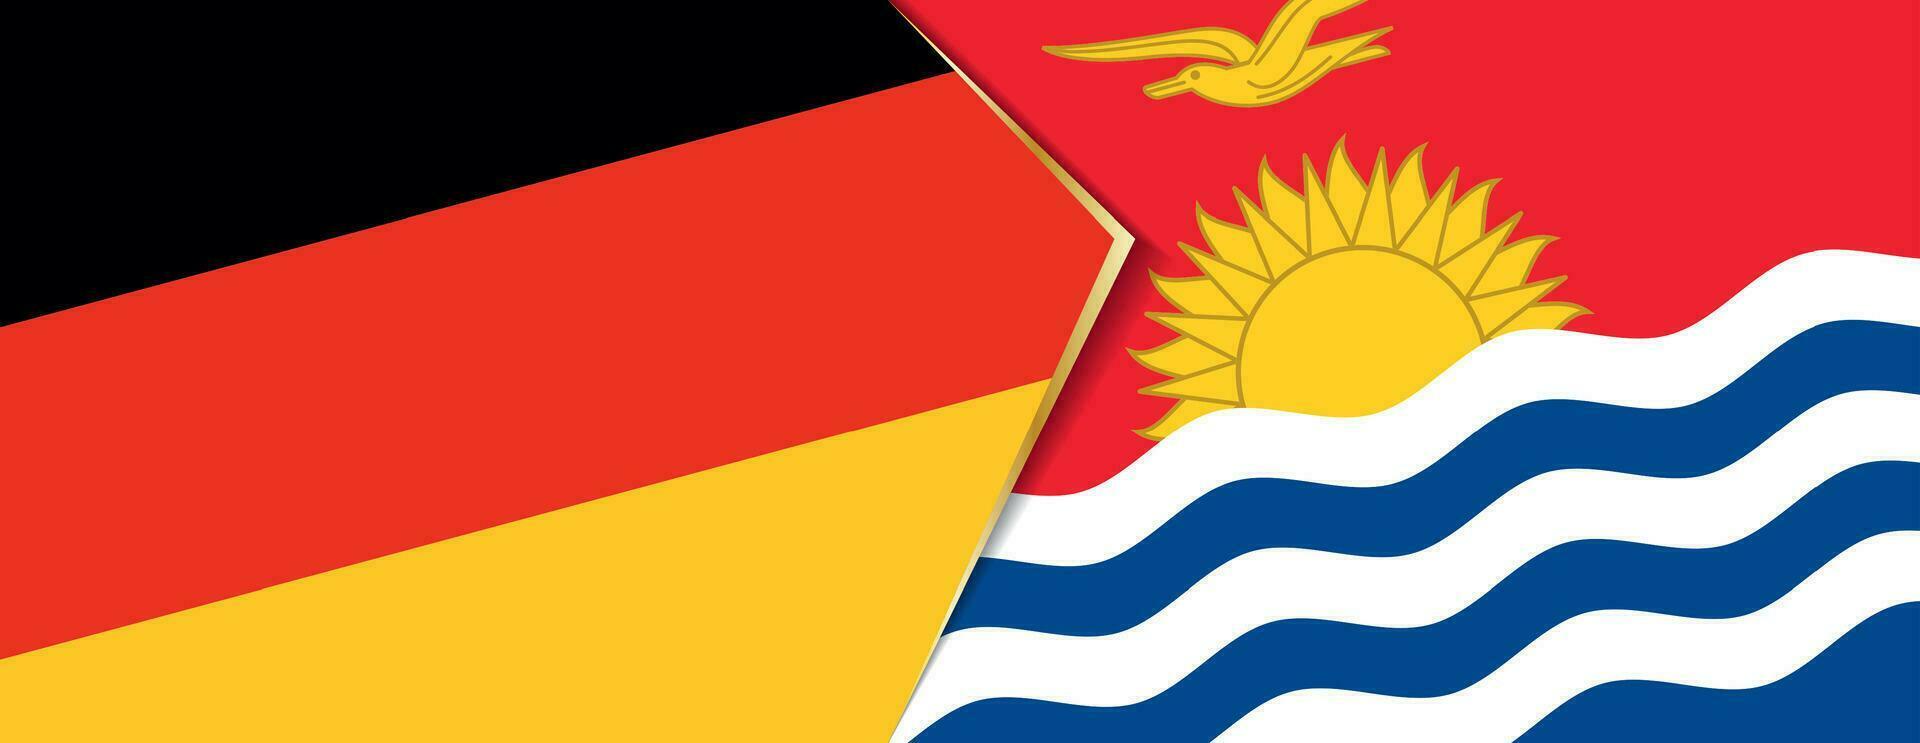 Alemania y Kiribati banderas, dos vector banderas